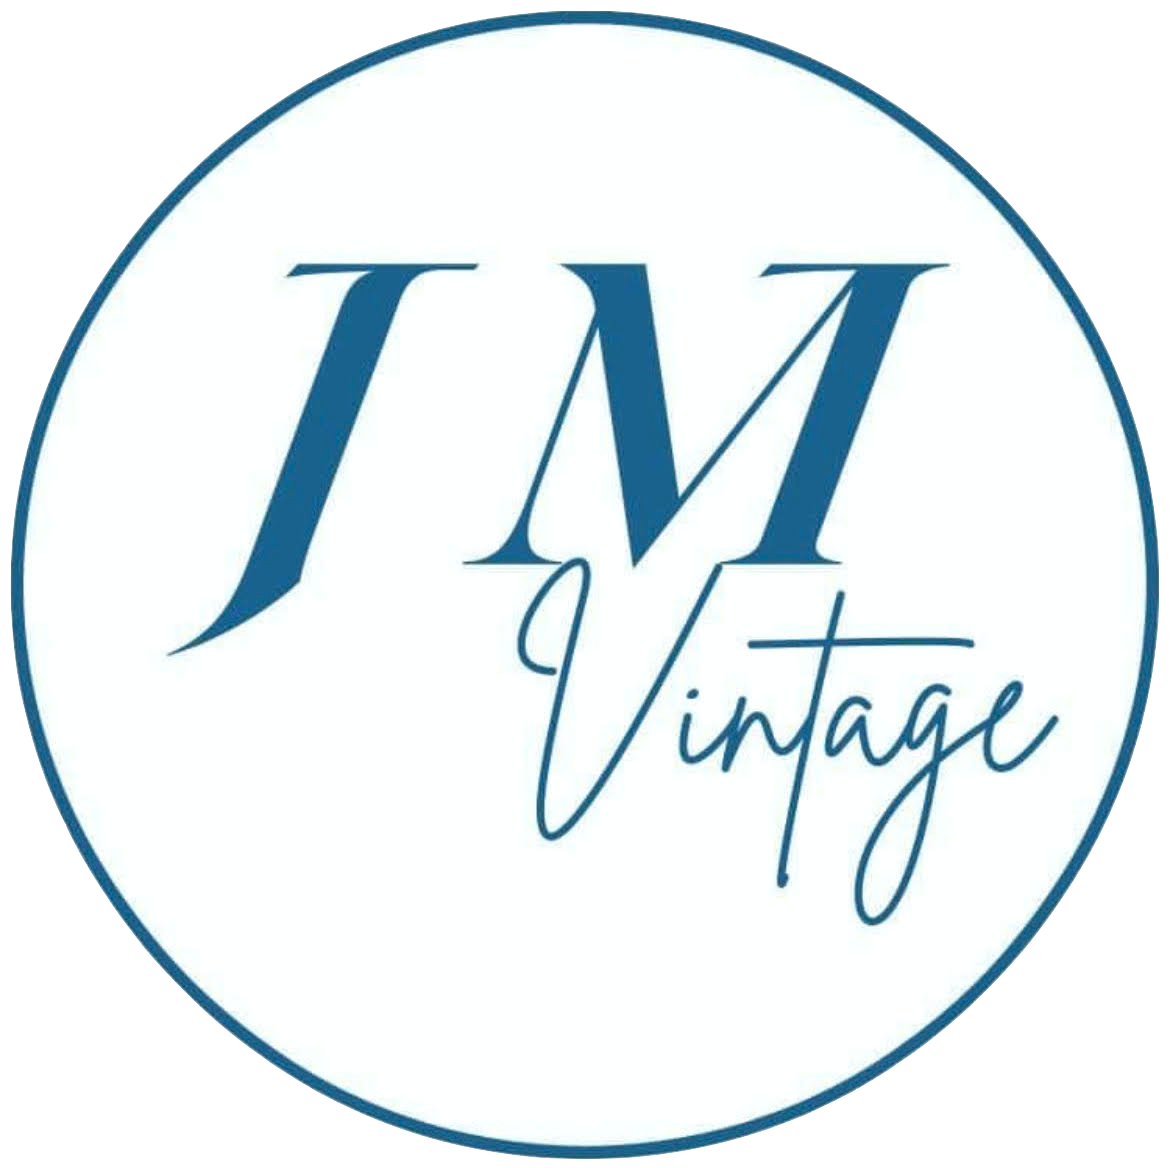 JM Vintage– JMVINTAGECHILE